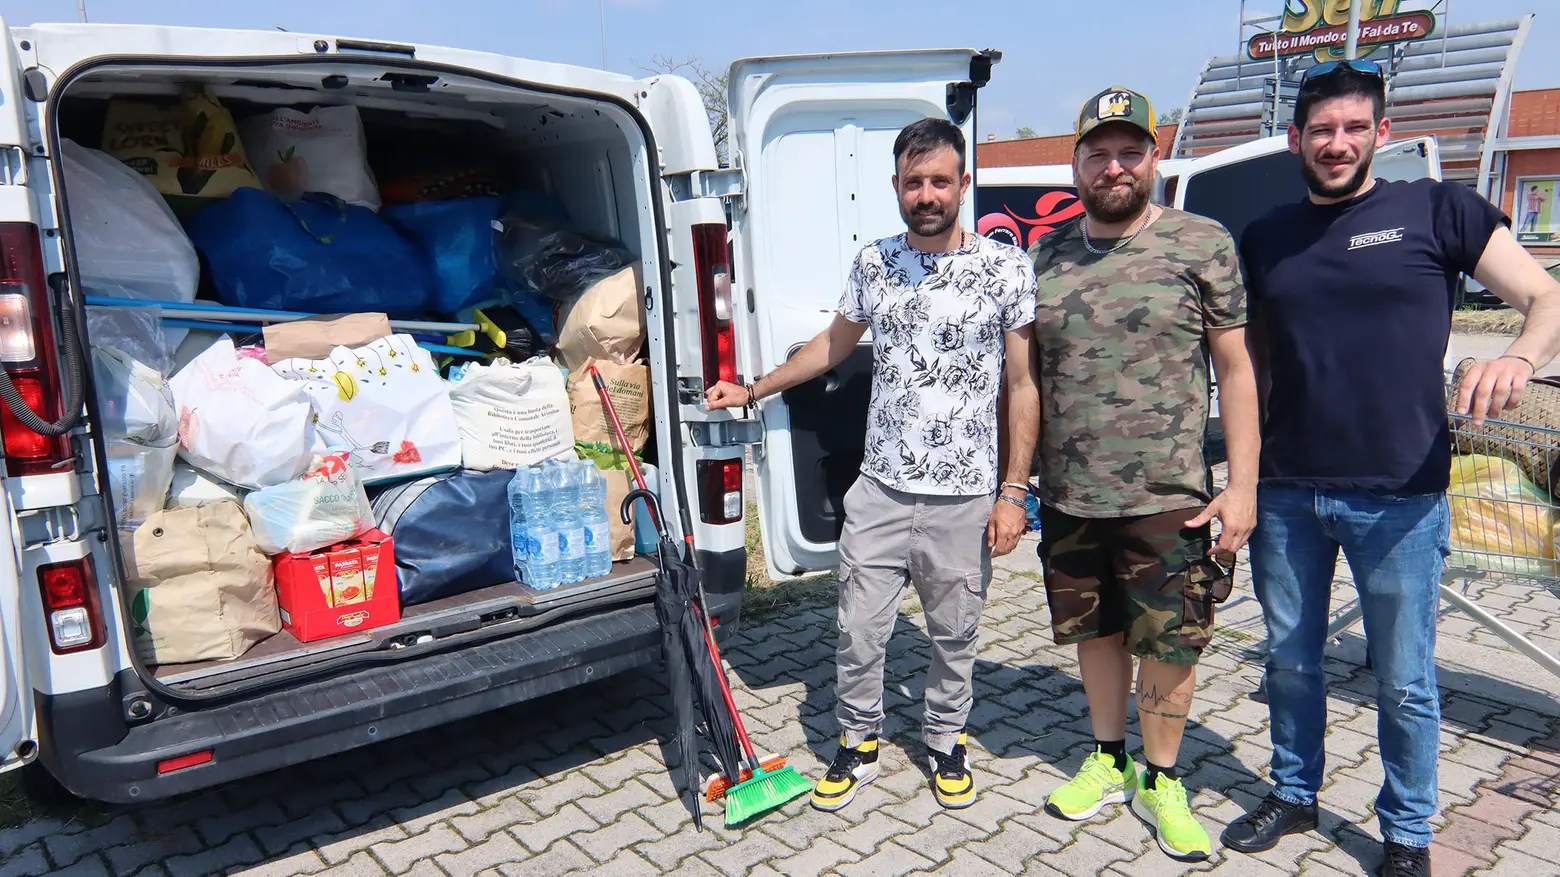 Aiuti a chi ha perso tutto  Un carico d’umanità  nel vano del furgone  E Pelù saluta la Romagna